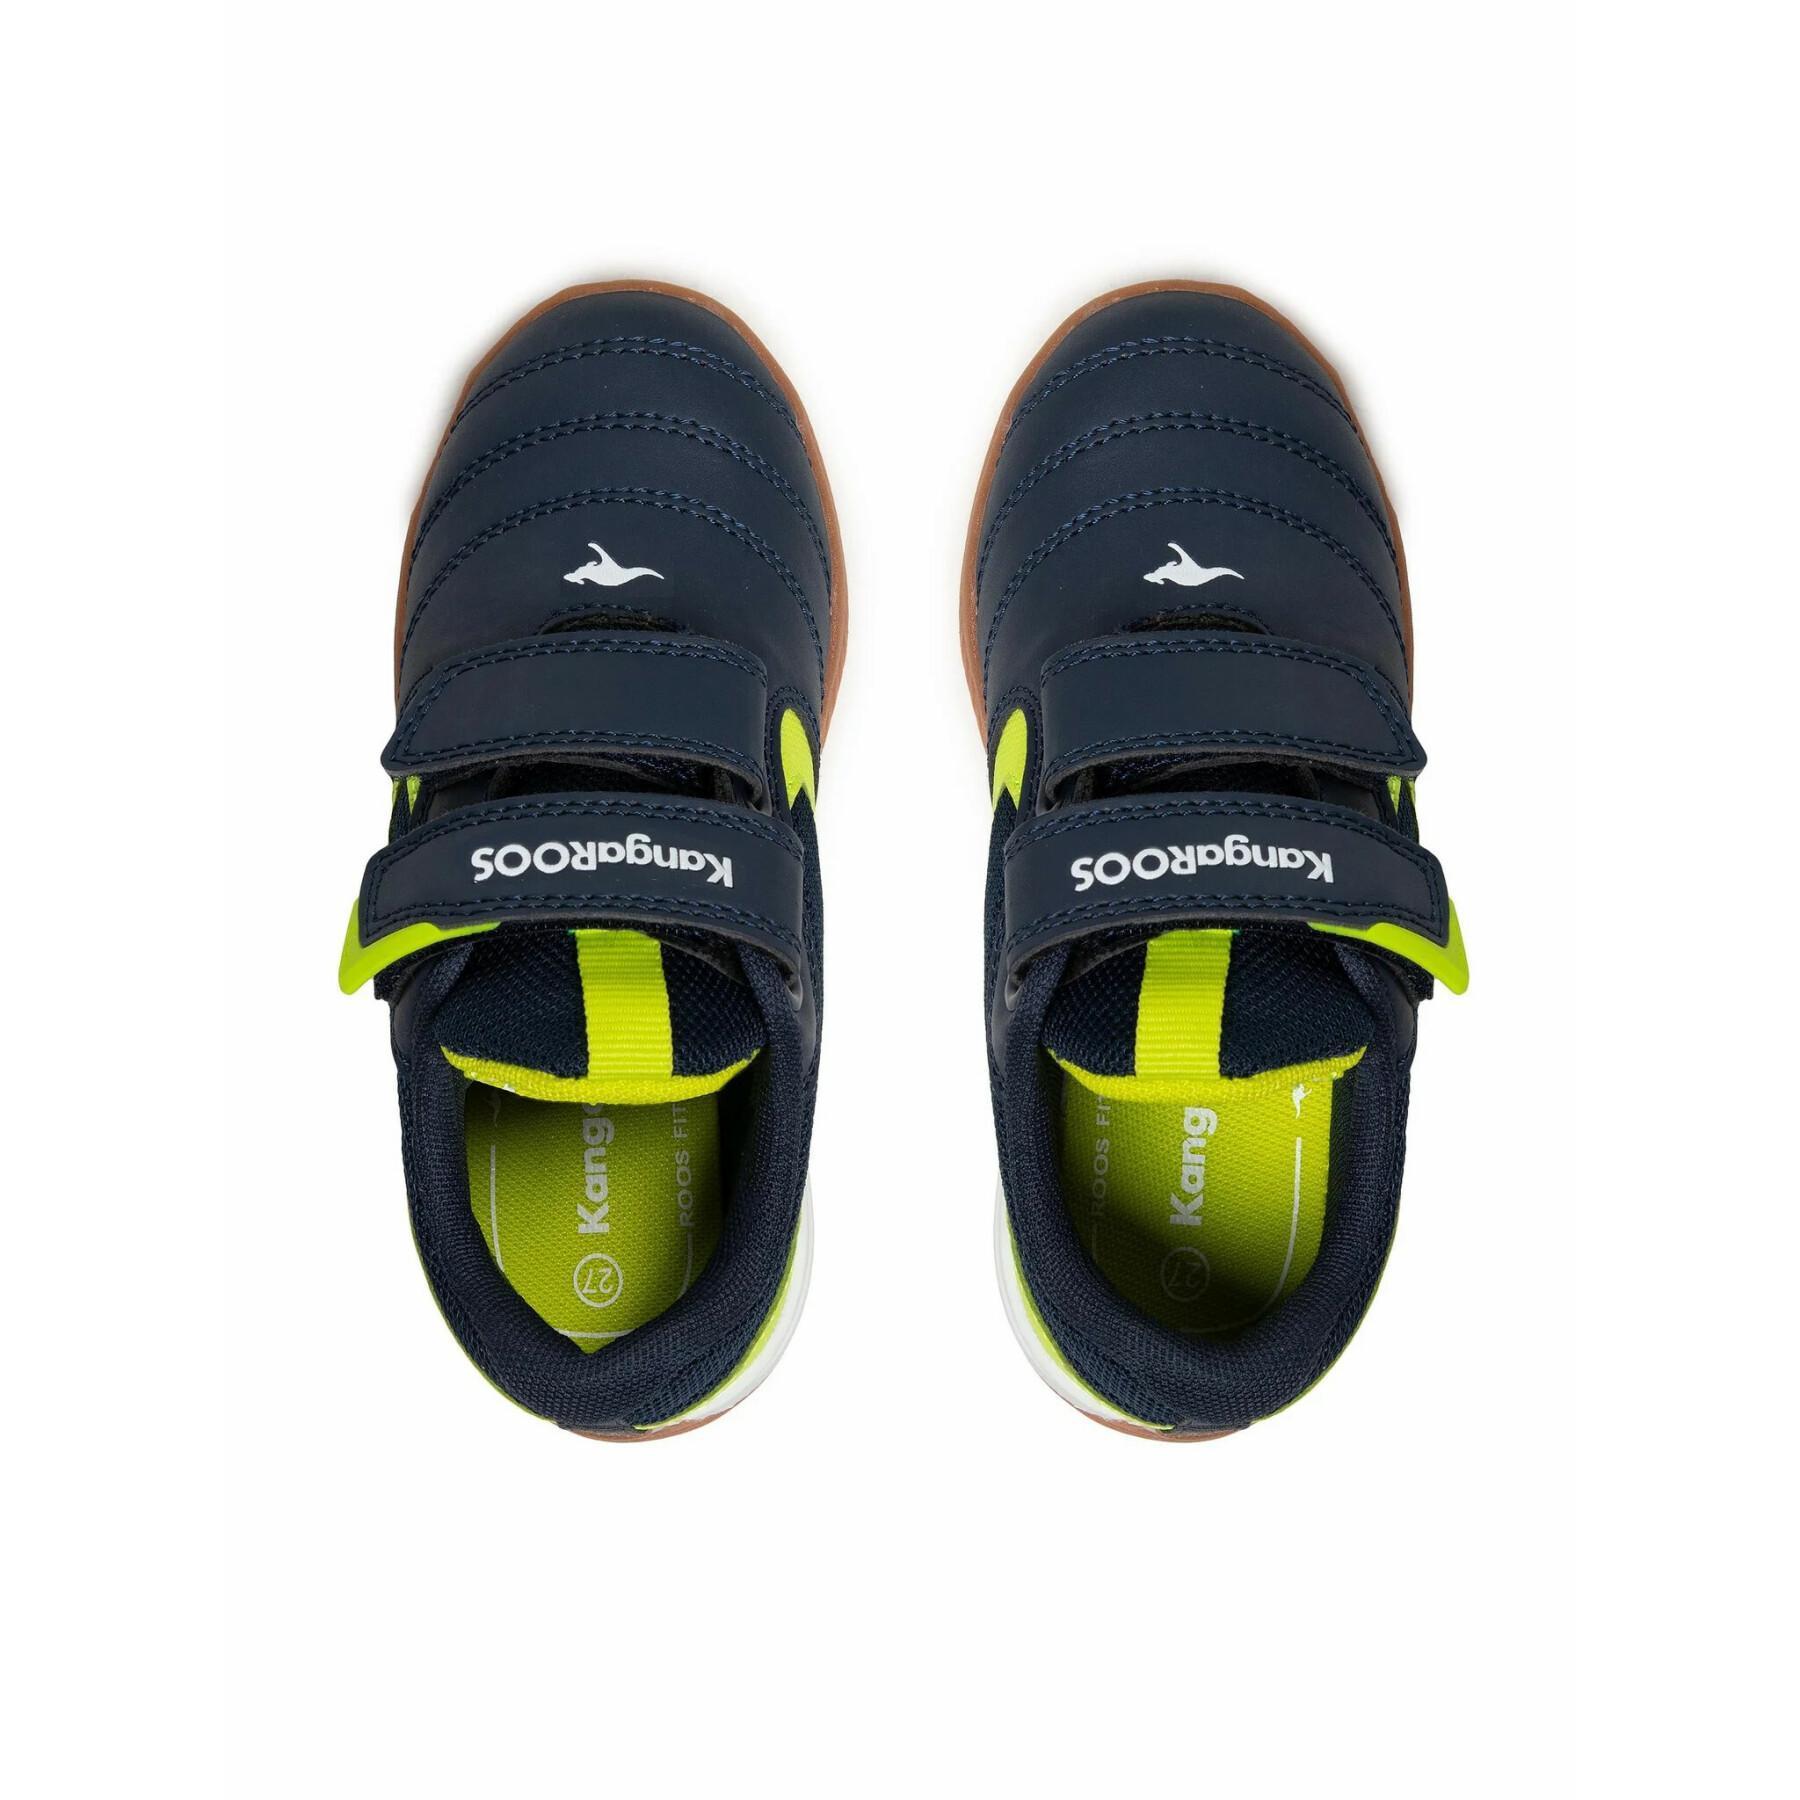 Children's sneakers KangaROOS K5-Court V junior